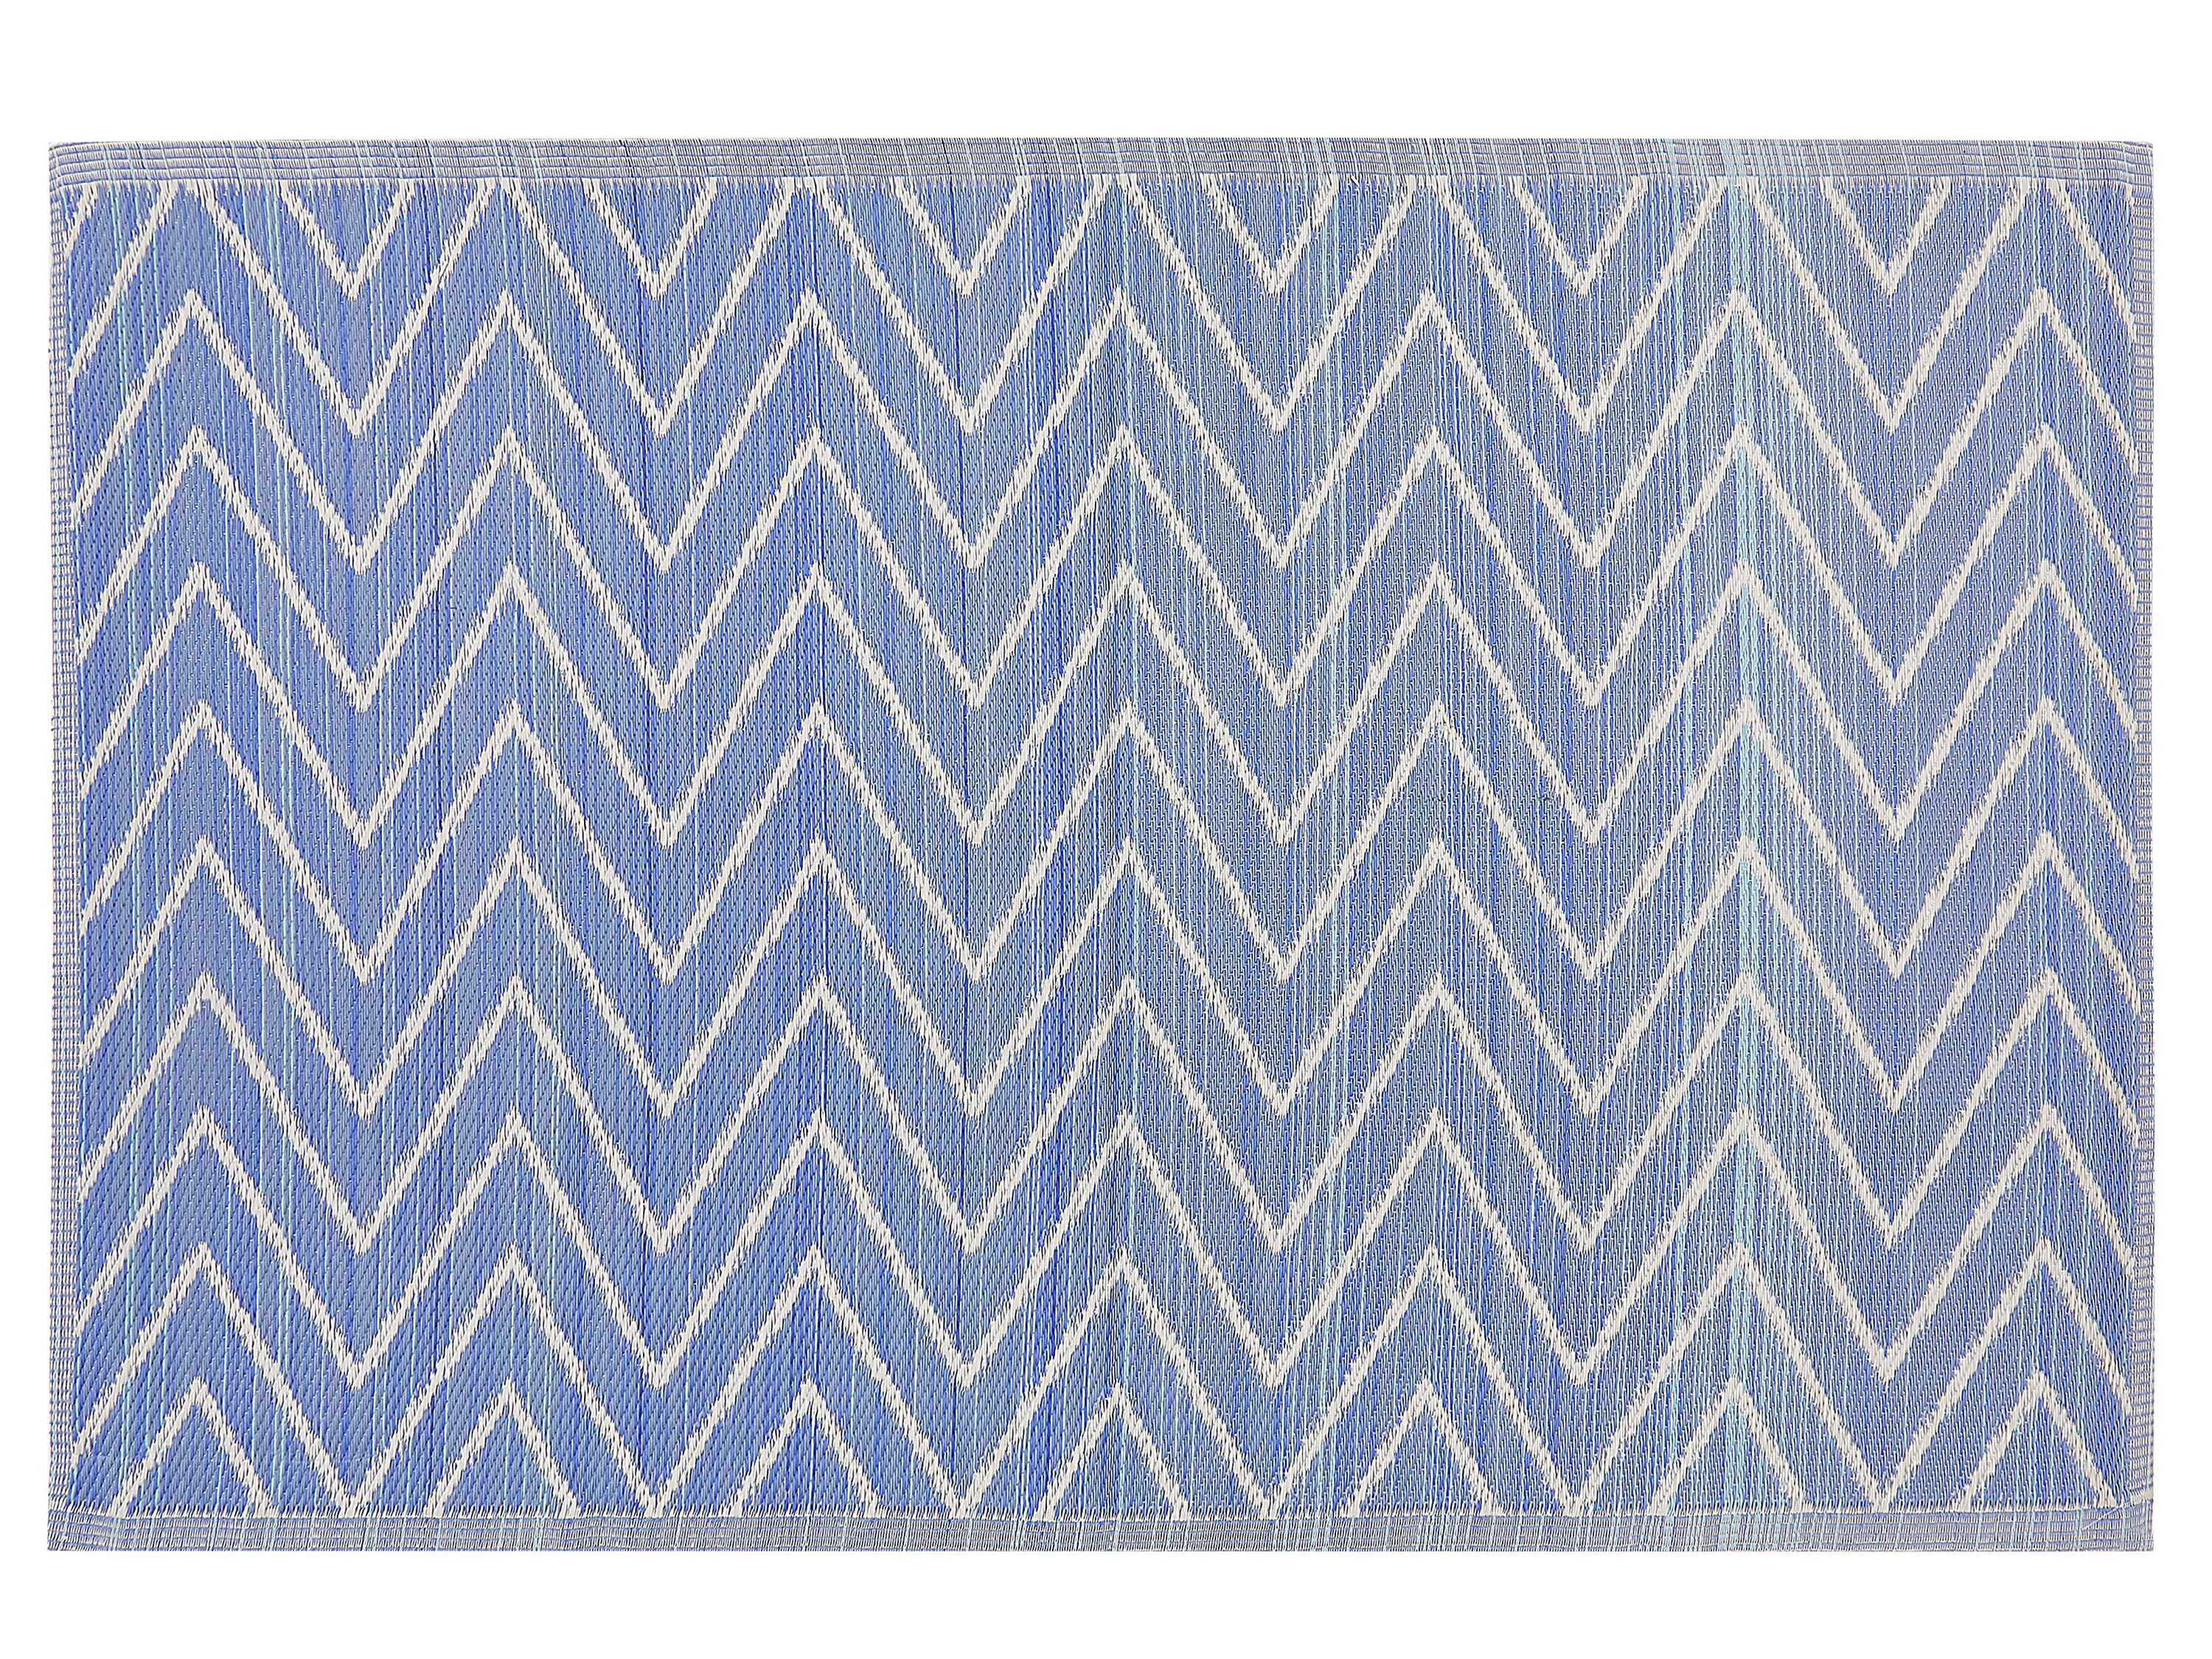  BALOTRA kék-fehér mintás kültéri szőnyeg 120 x 180 cm 21170 B